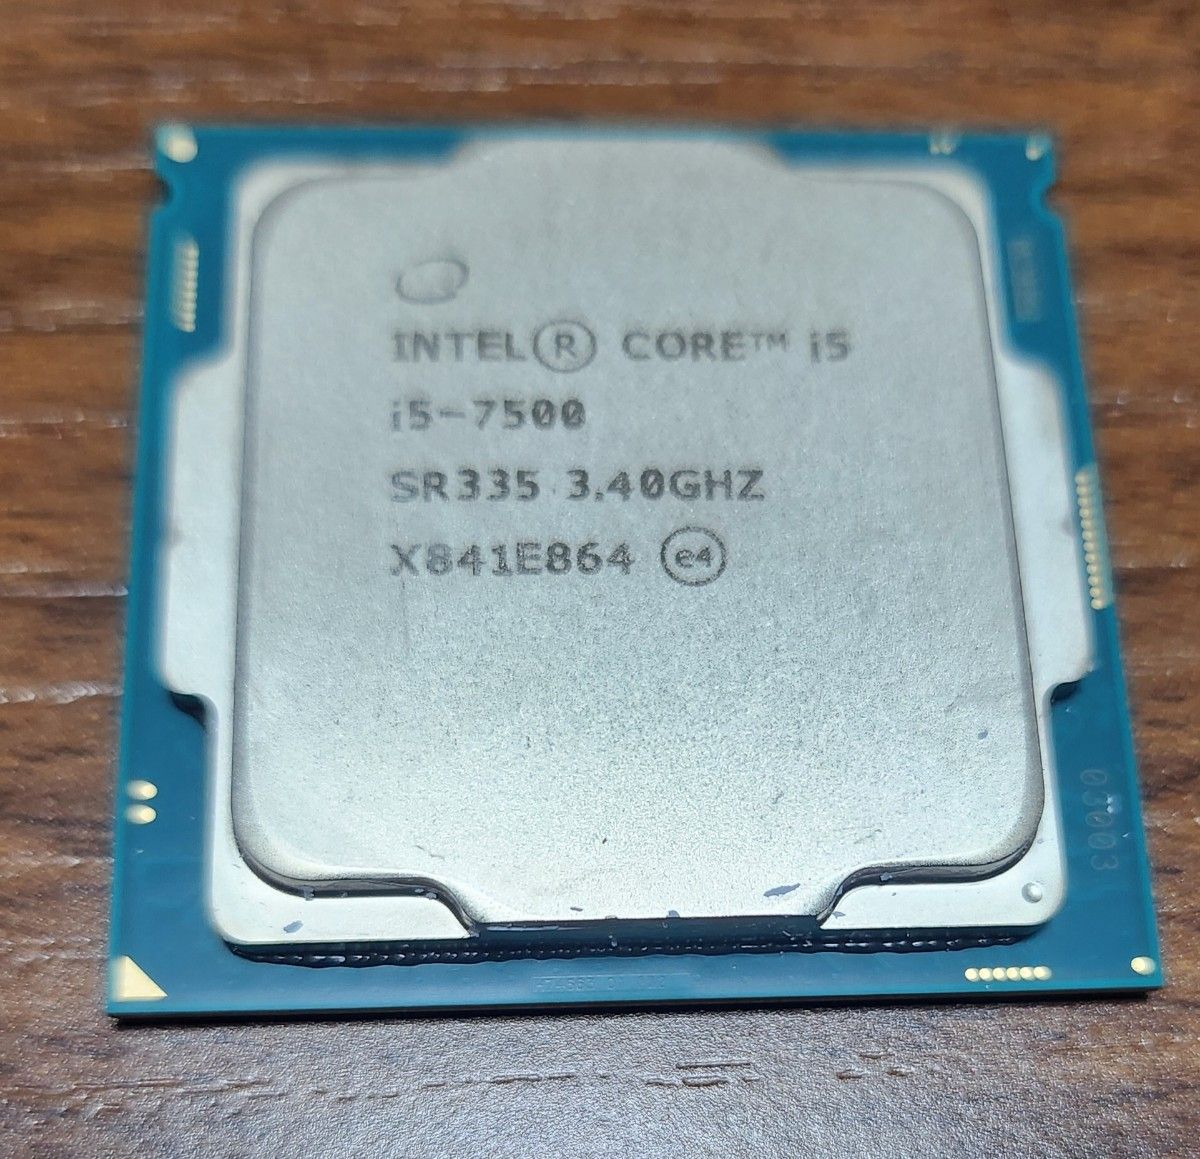 Intel CORE-i5 i5-7500 3.40GHZ CPU